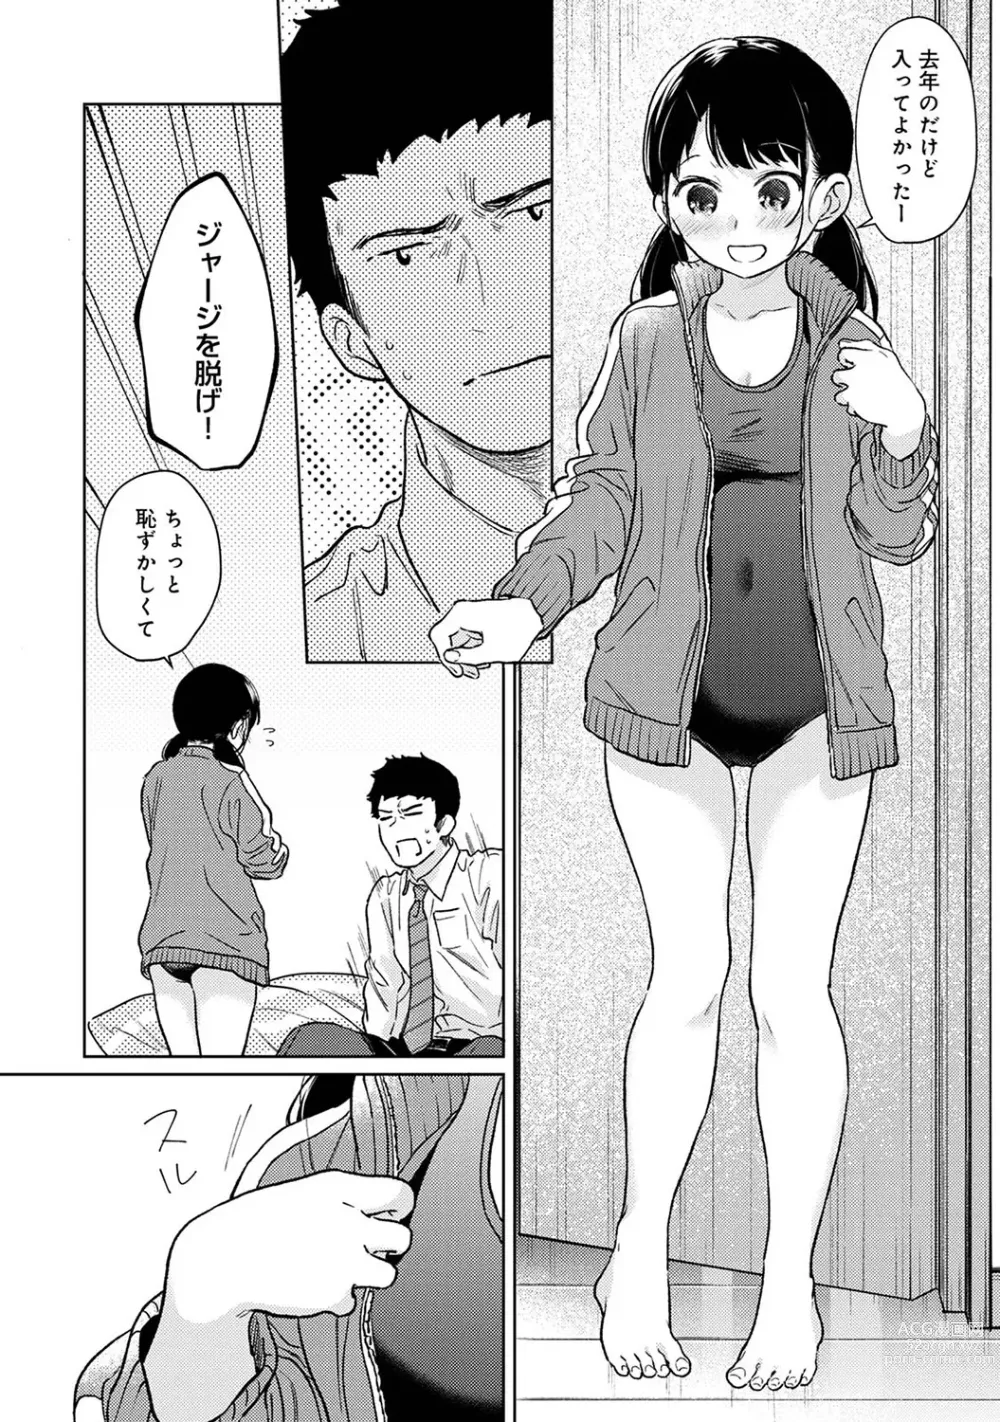 Page 16 of manga COMIC Ananga Ranga Vol. 101